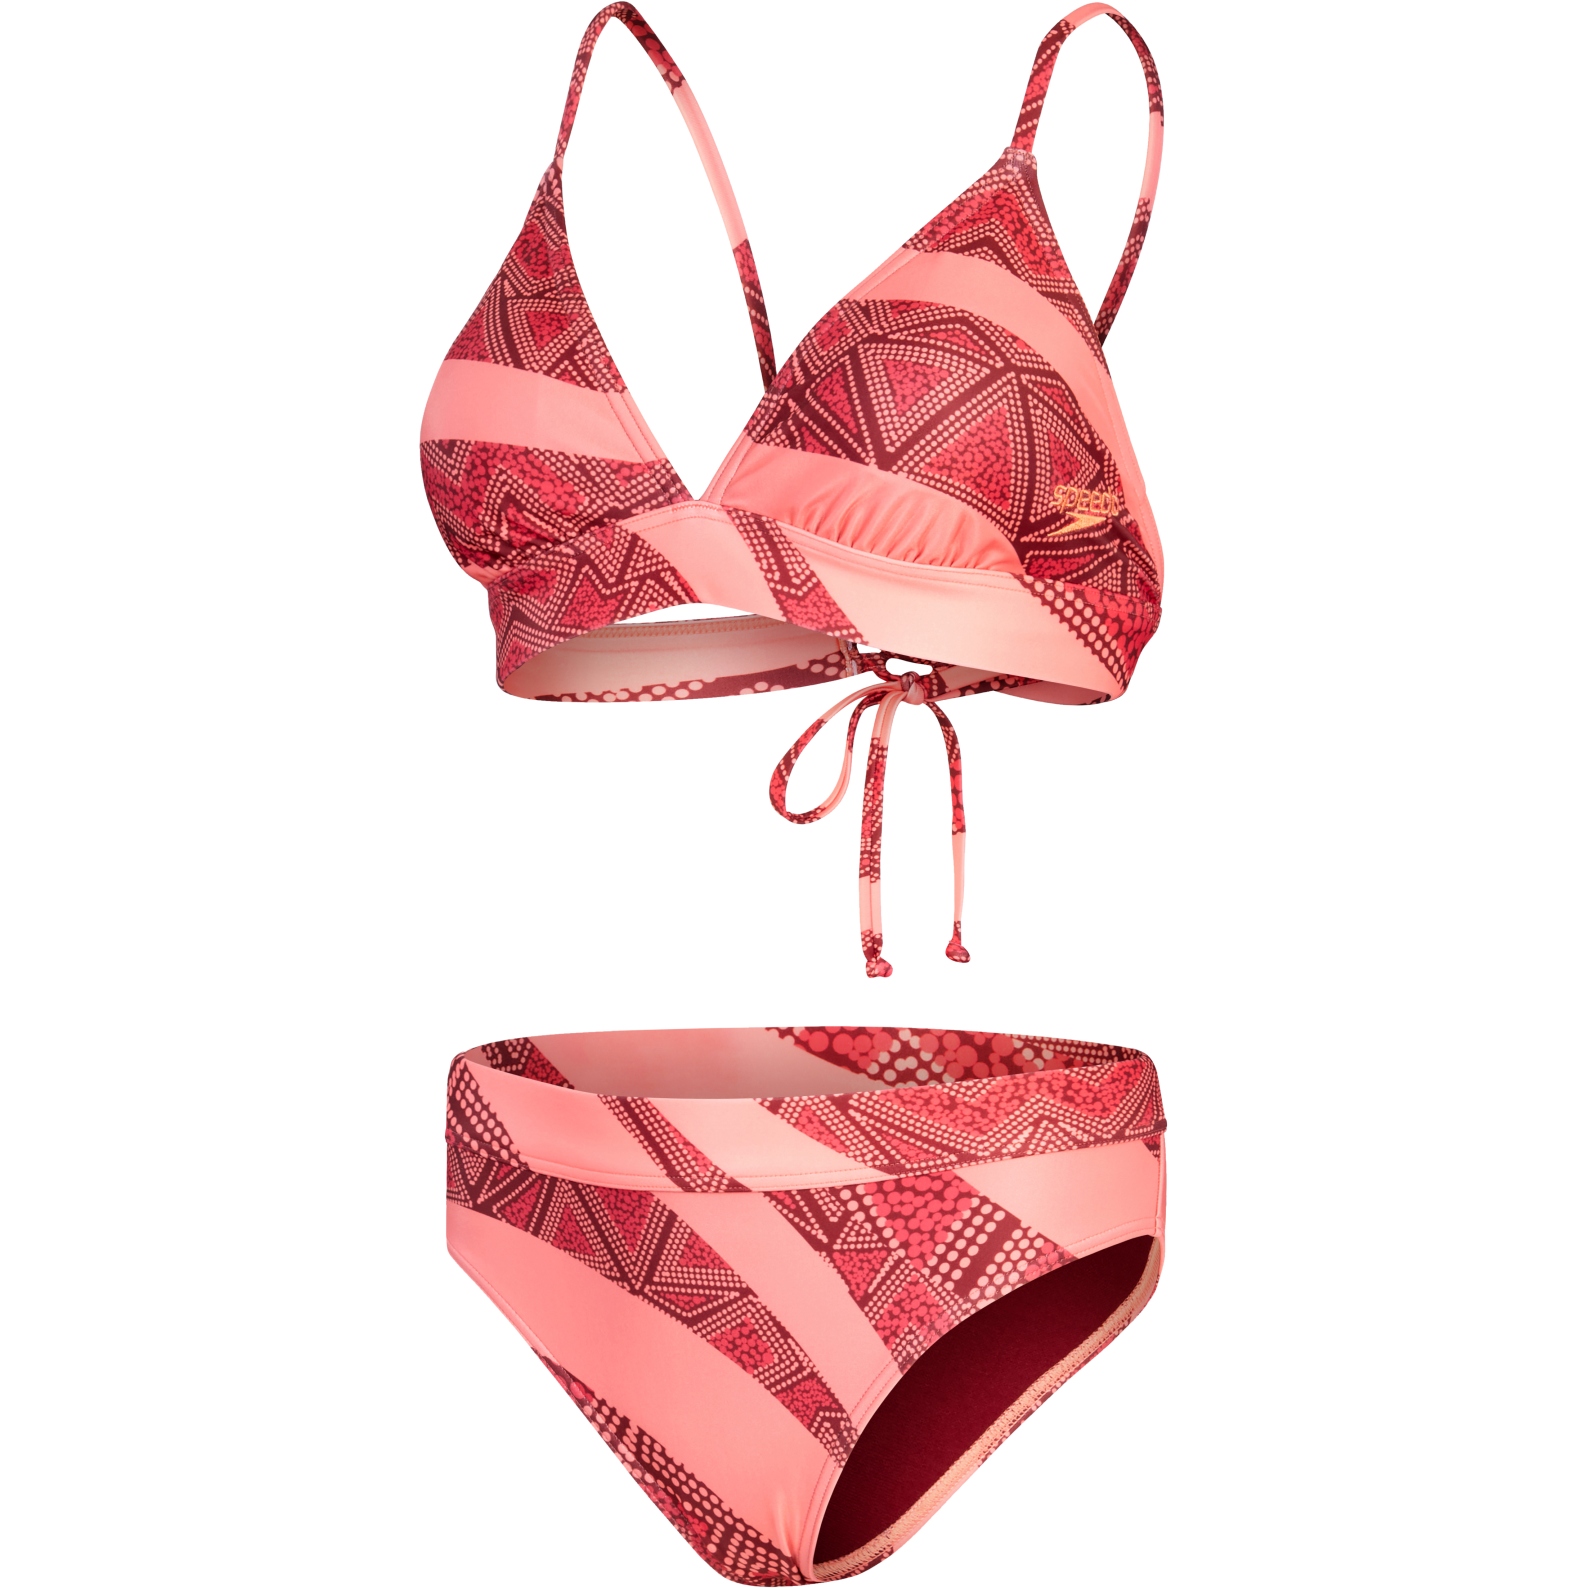 Produktbild von Speedo Printed Banded Triangle Bikini Damen - oxblood/soft coral